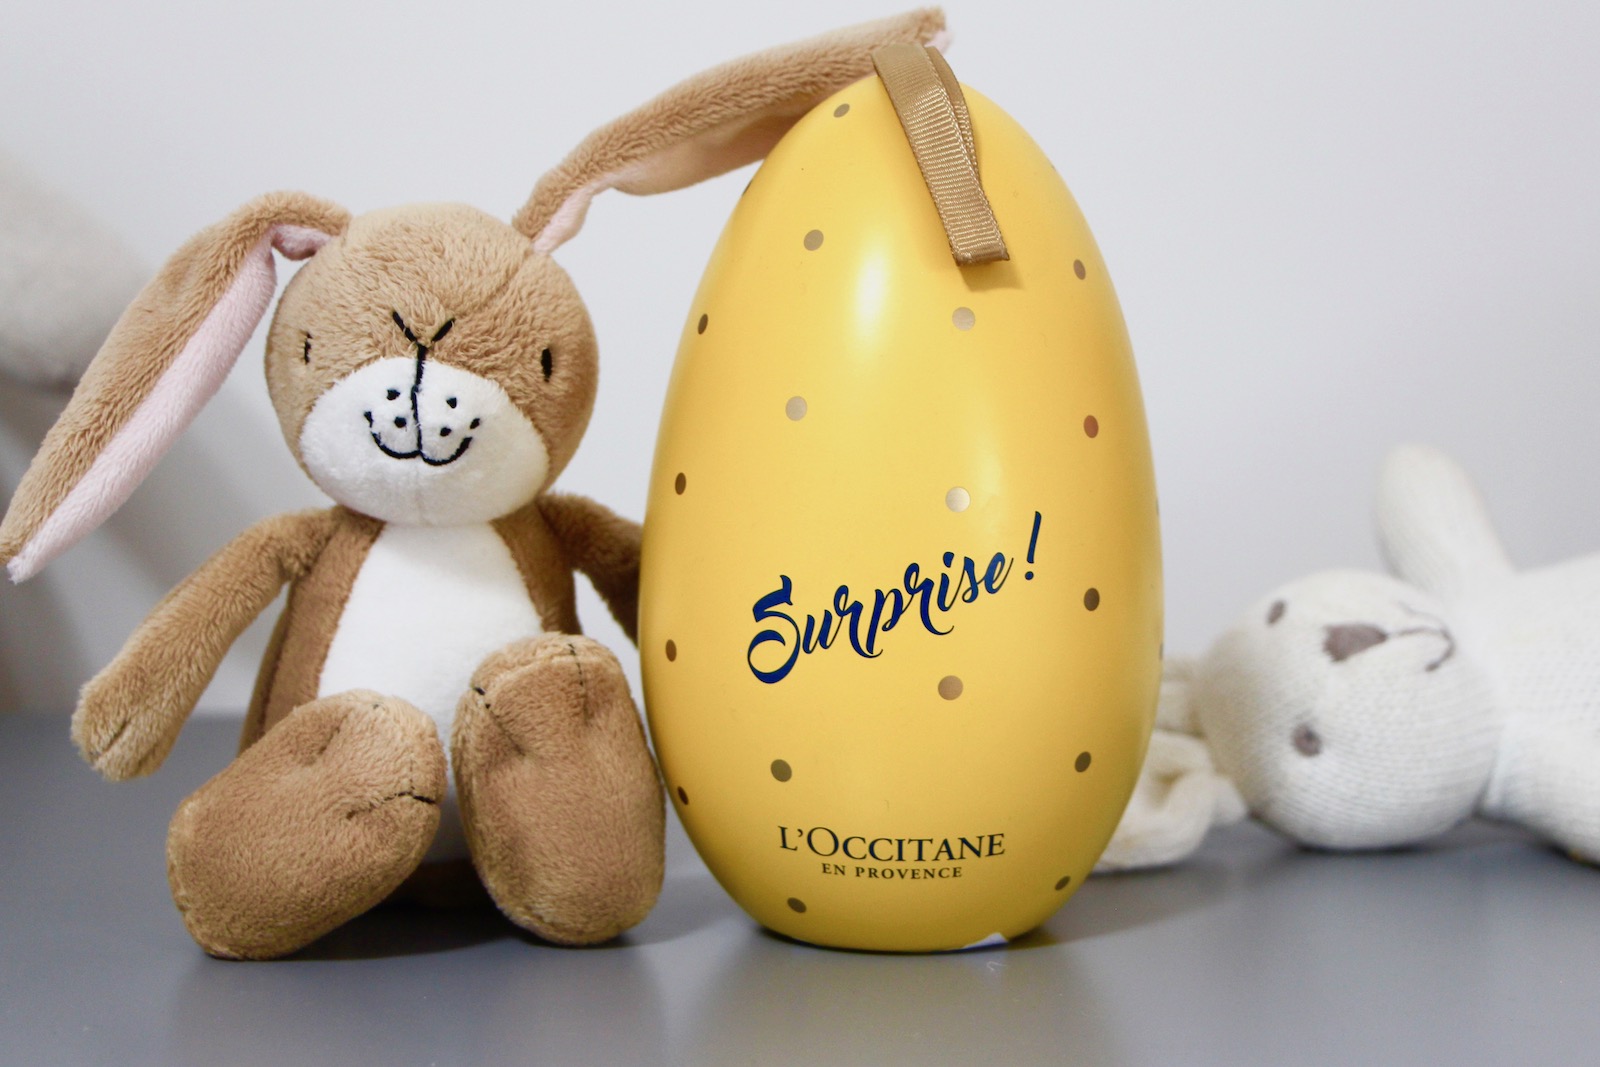 The L’Occitane Beauty Easter Egg